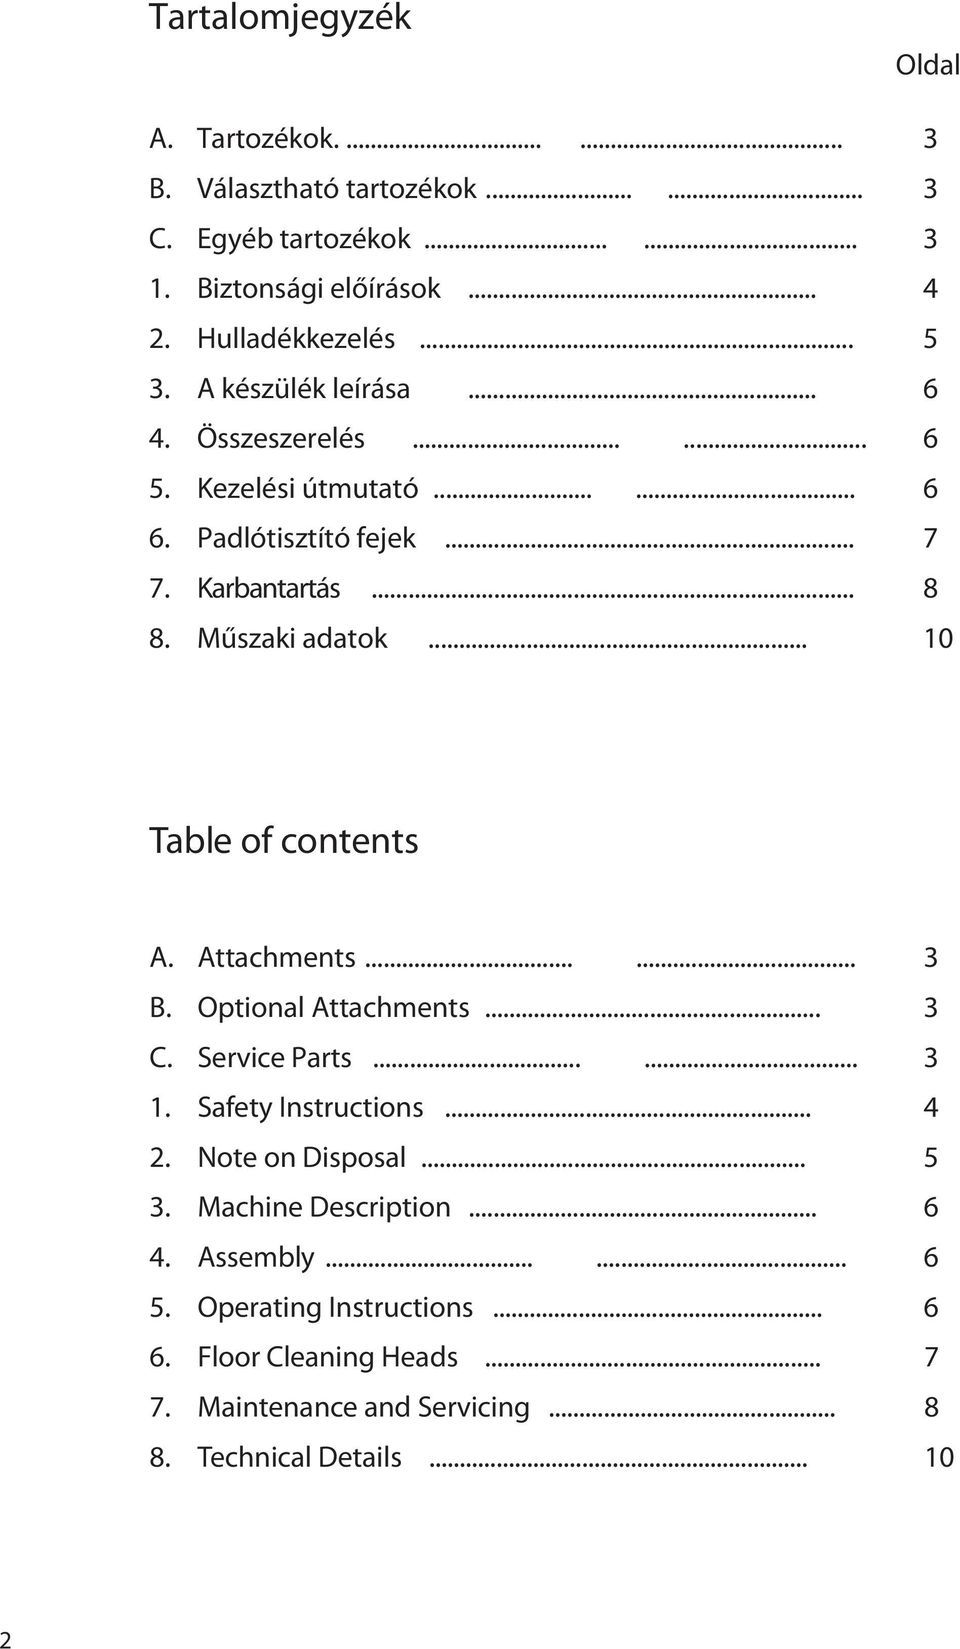 Műszaki adatok... 10 Table of contents A. Attachments...... 3 B. Optional Attachments... 3 C. Service Parts...... 3 1. Safety Instructions... 4 2.